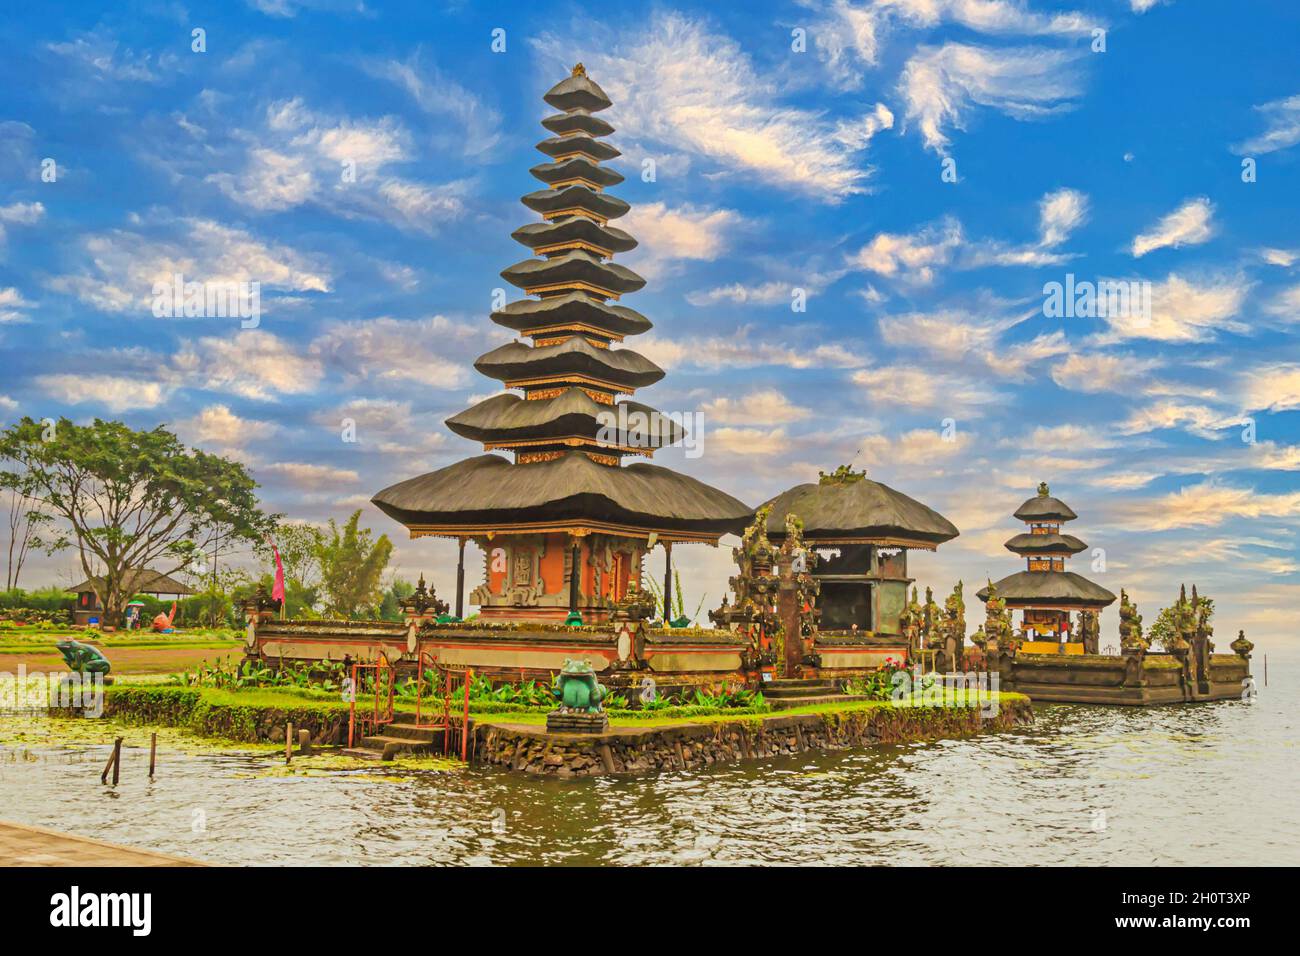 Picture of Pura Ulun Danu Bratan temple complex at Banau Beratan lake on the Indonesian island Bali Stock Photo